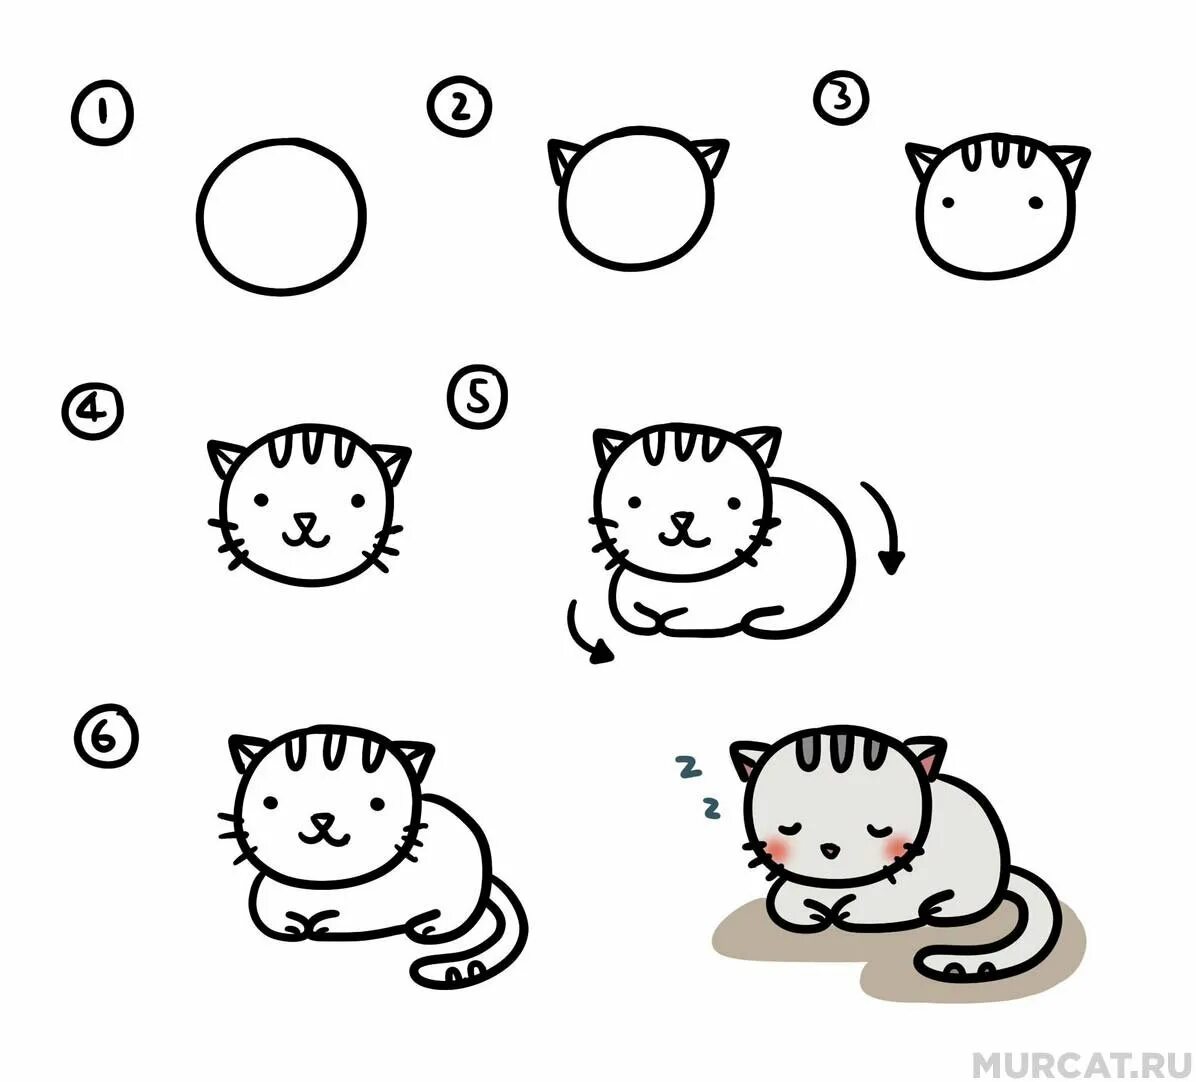 Рисуем кота с детьми. Схема рисования котенка для детей. Схема рисования кошки для дошкольников. Поэтапное рисование котика для детей. Простые схемы рисования для малышей.